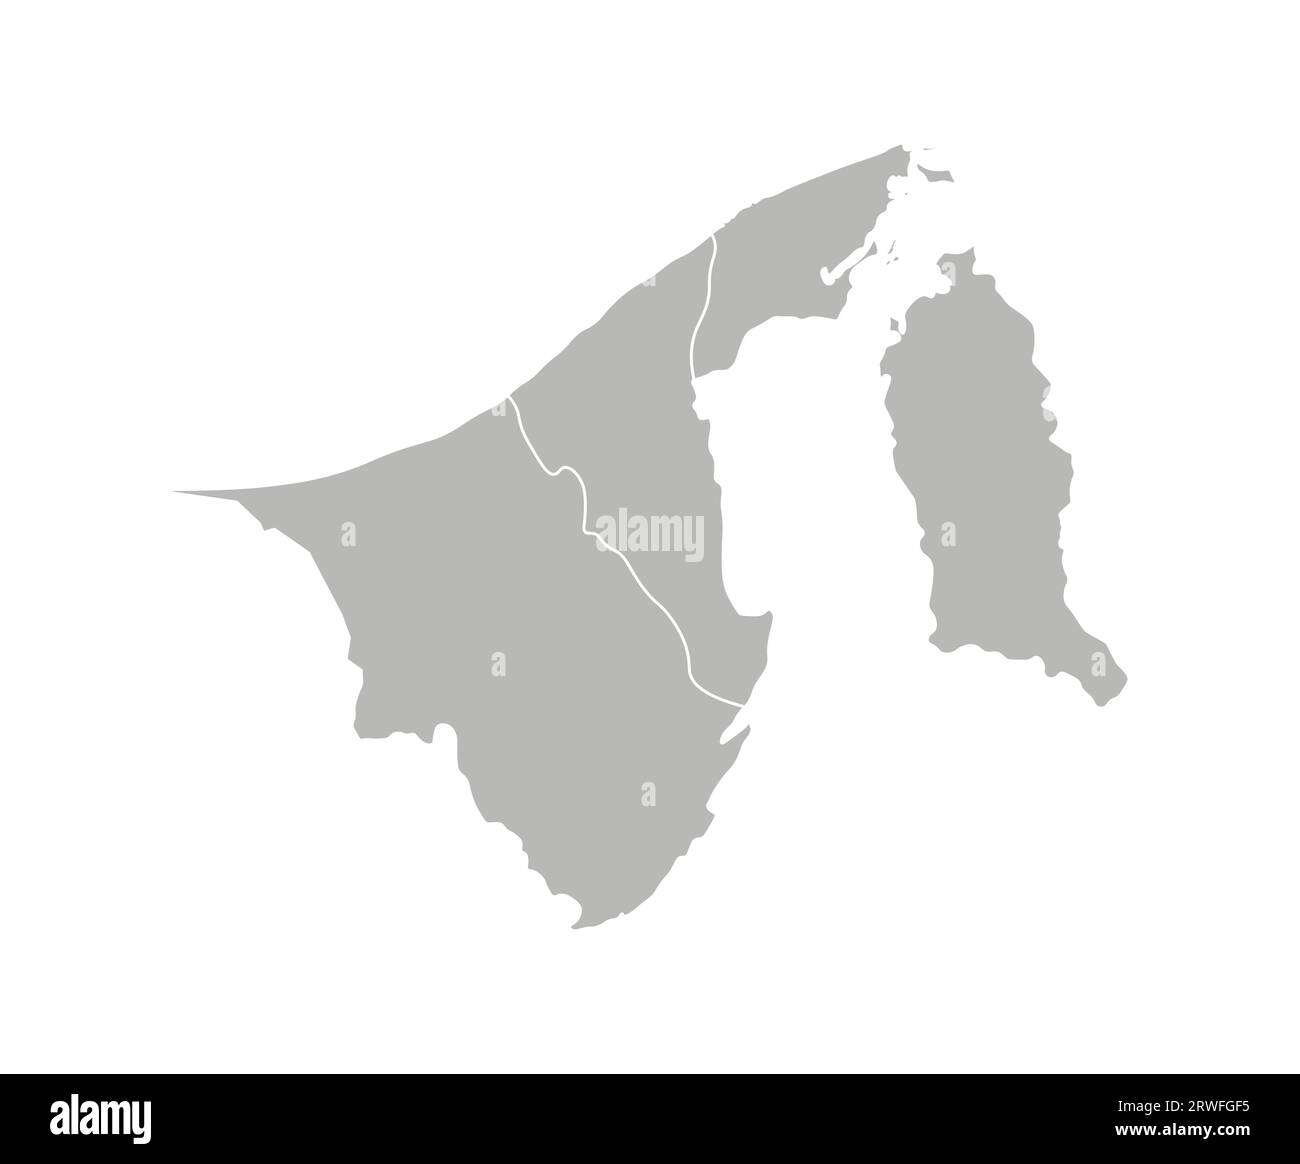 Illustrazione vettoriale isolata della mappa amministrativa semplificata del Brunei. Confini delle province (regioni). Silhouette grigie. Contorno bianco. Illustrazione Vettoriale